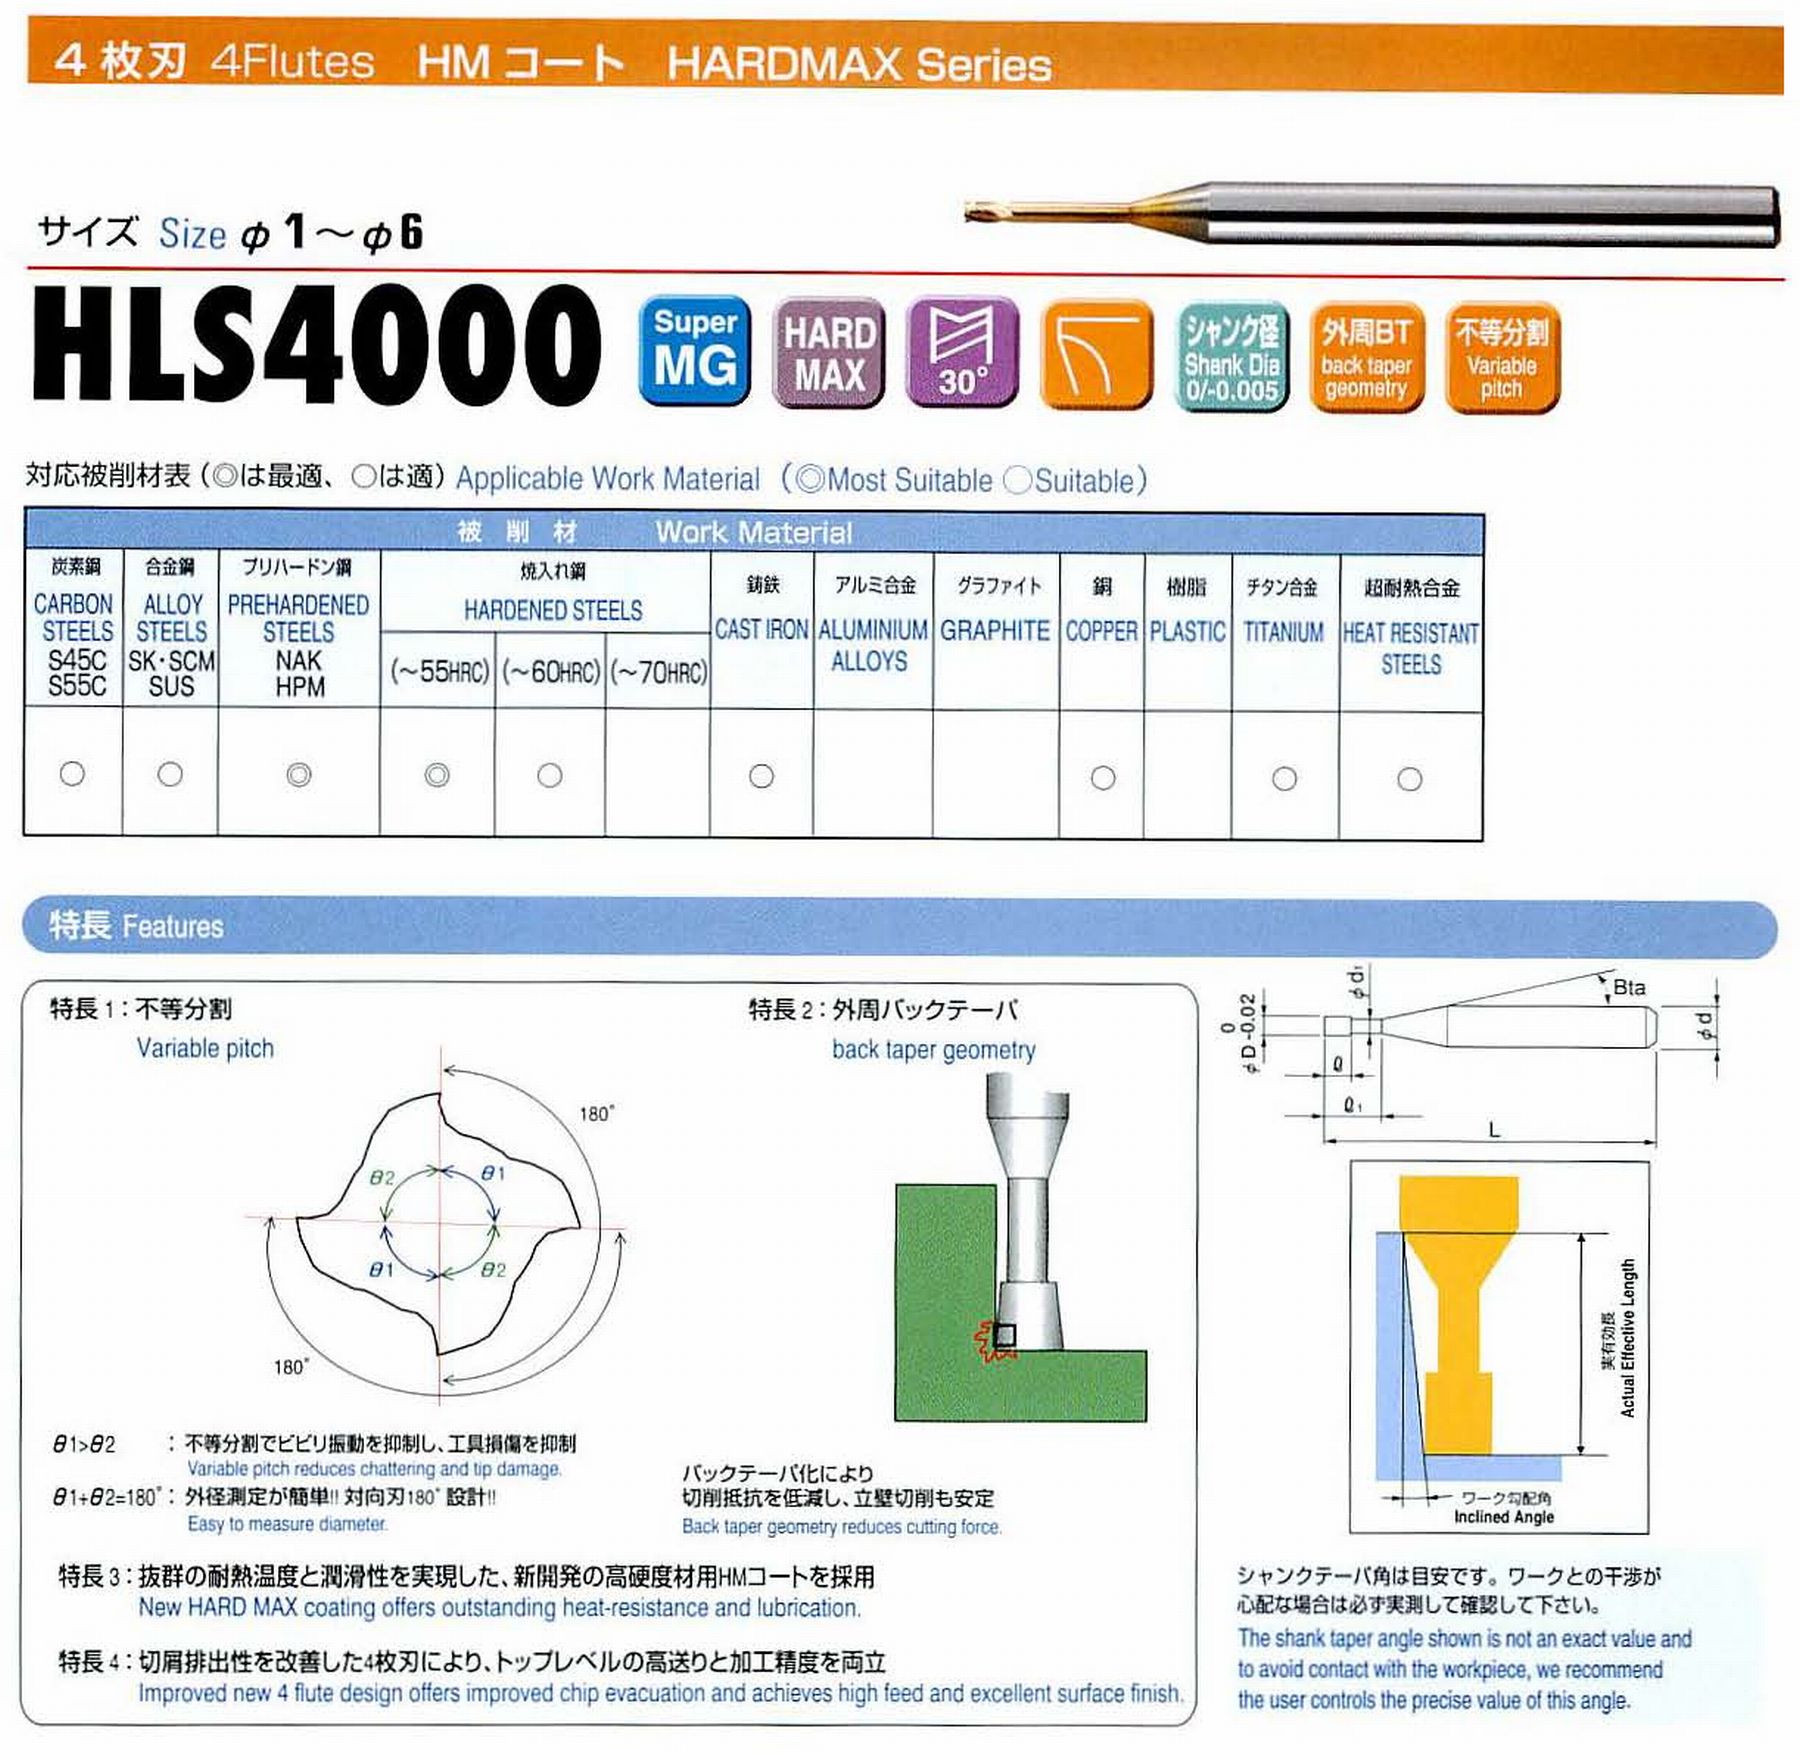 ユニオンツール 4枚刃 HLS4020-100 外径2 有効長10 刃長2 首径1.91 シャンクテーパ角16° 全長50 シャンク径4